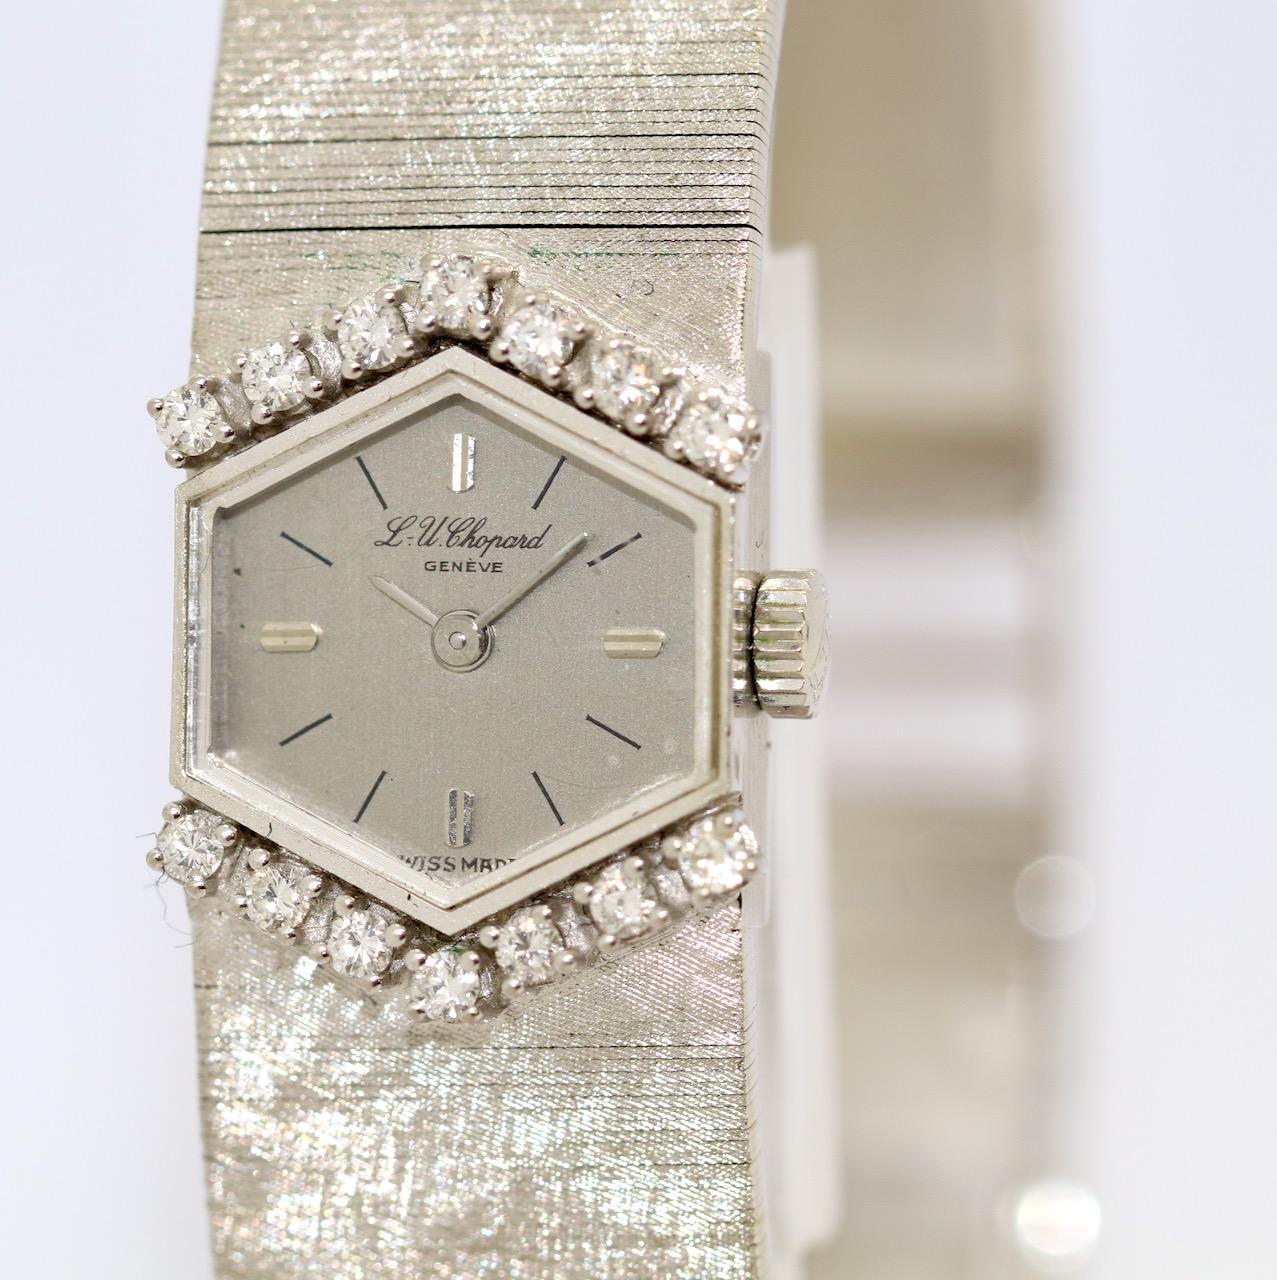 18 Karat Weißgold Damen-Armbanduhr von Chopard, mit Diamanten, sechseckige Form

Inklusive Echtheitszertifikat.